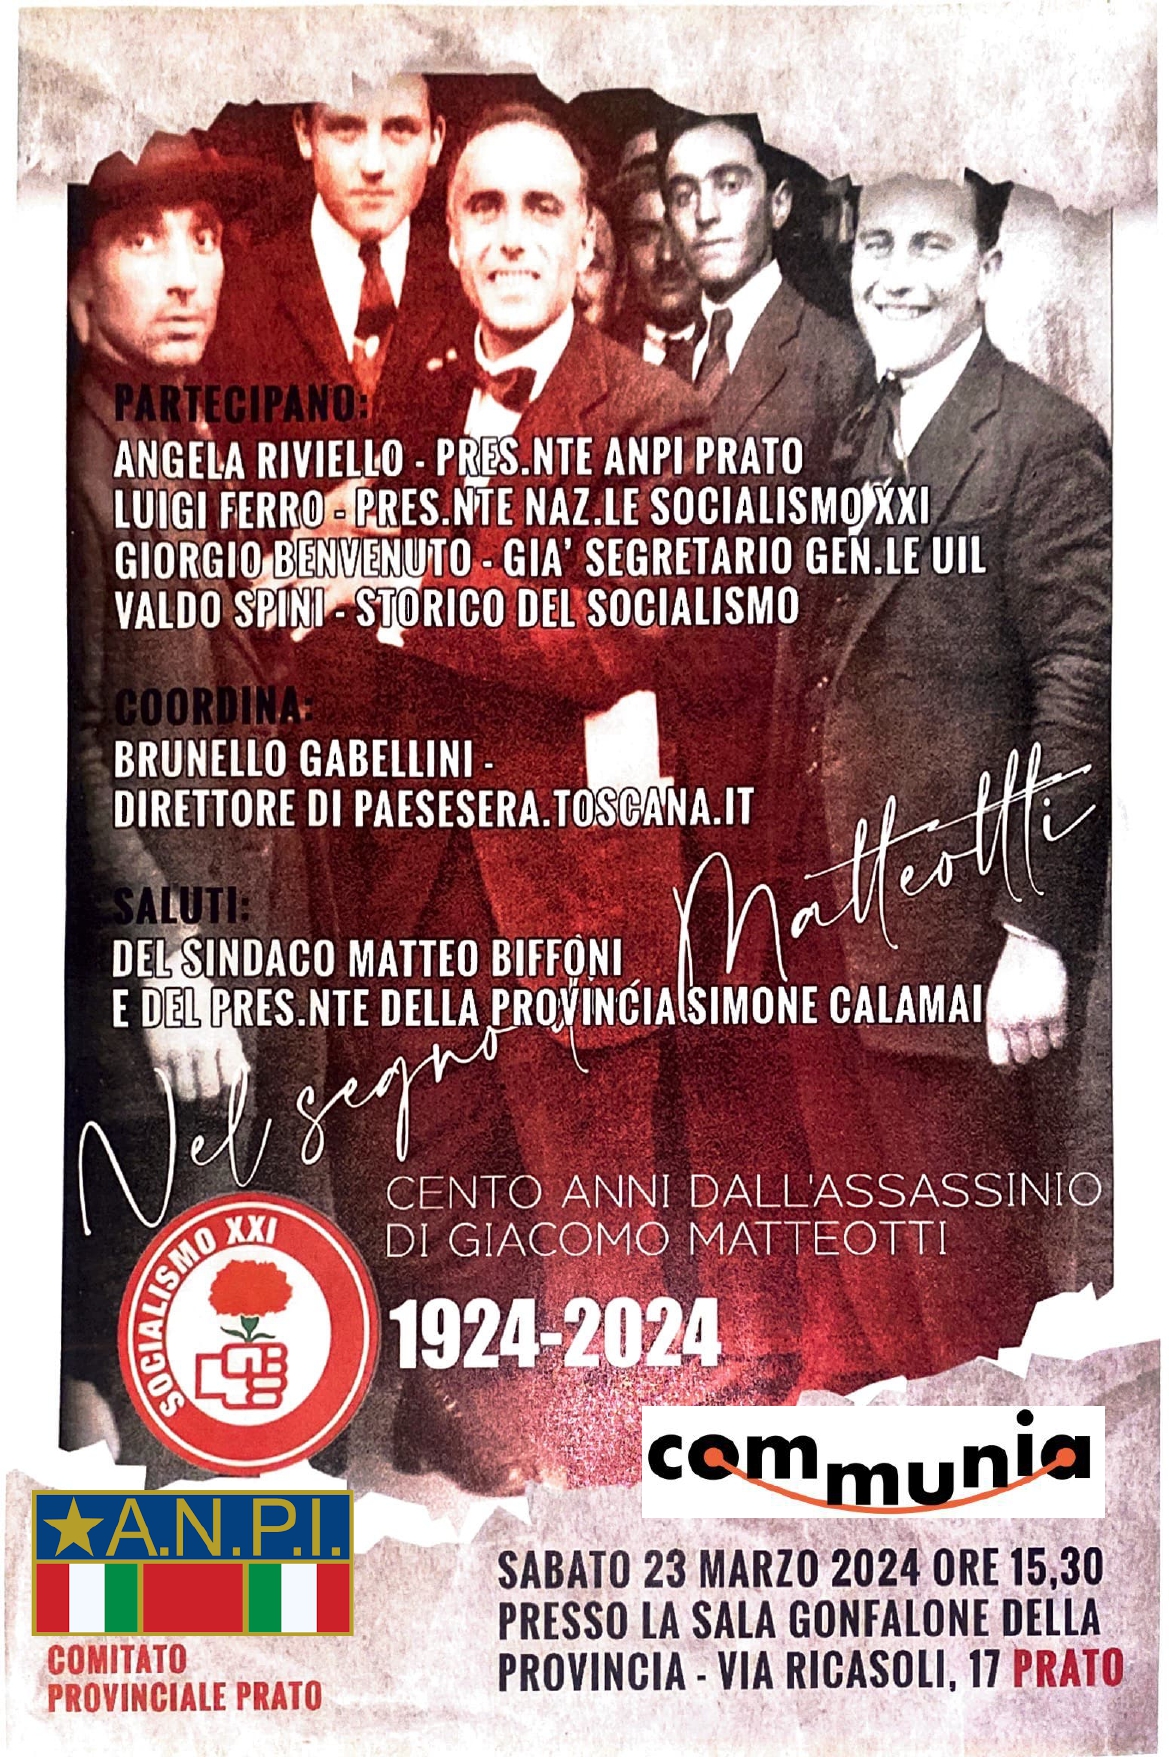 Cento anni dall’assassinio di Giacomo Matteotti: sabato 23 marzo iniziativa di ANPI, Socialismo XXI e Communia